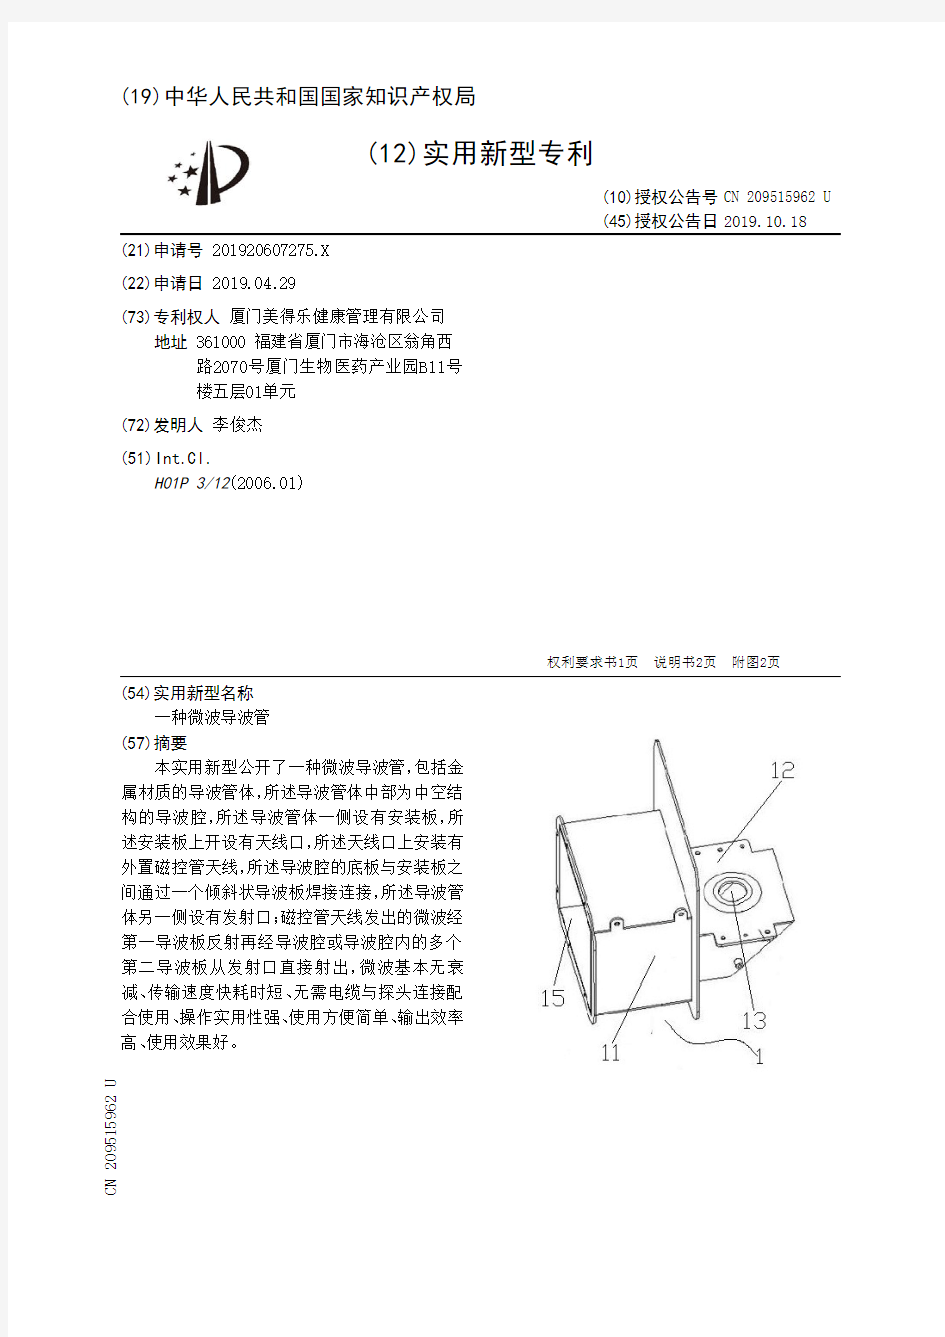 【CN209515962U】一种微波导波管【专利】